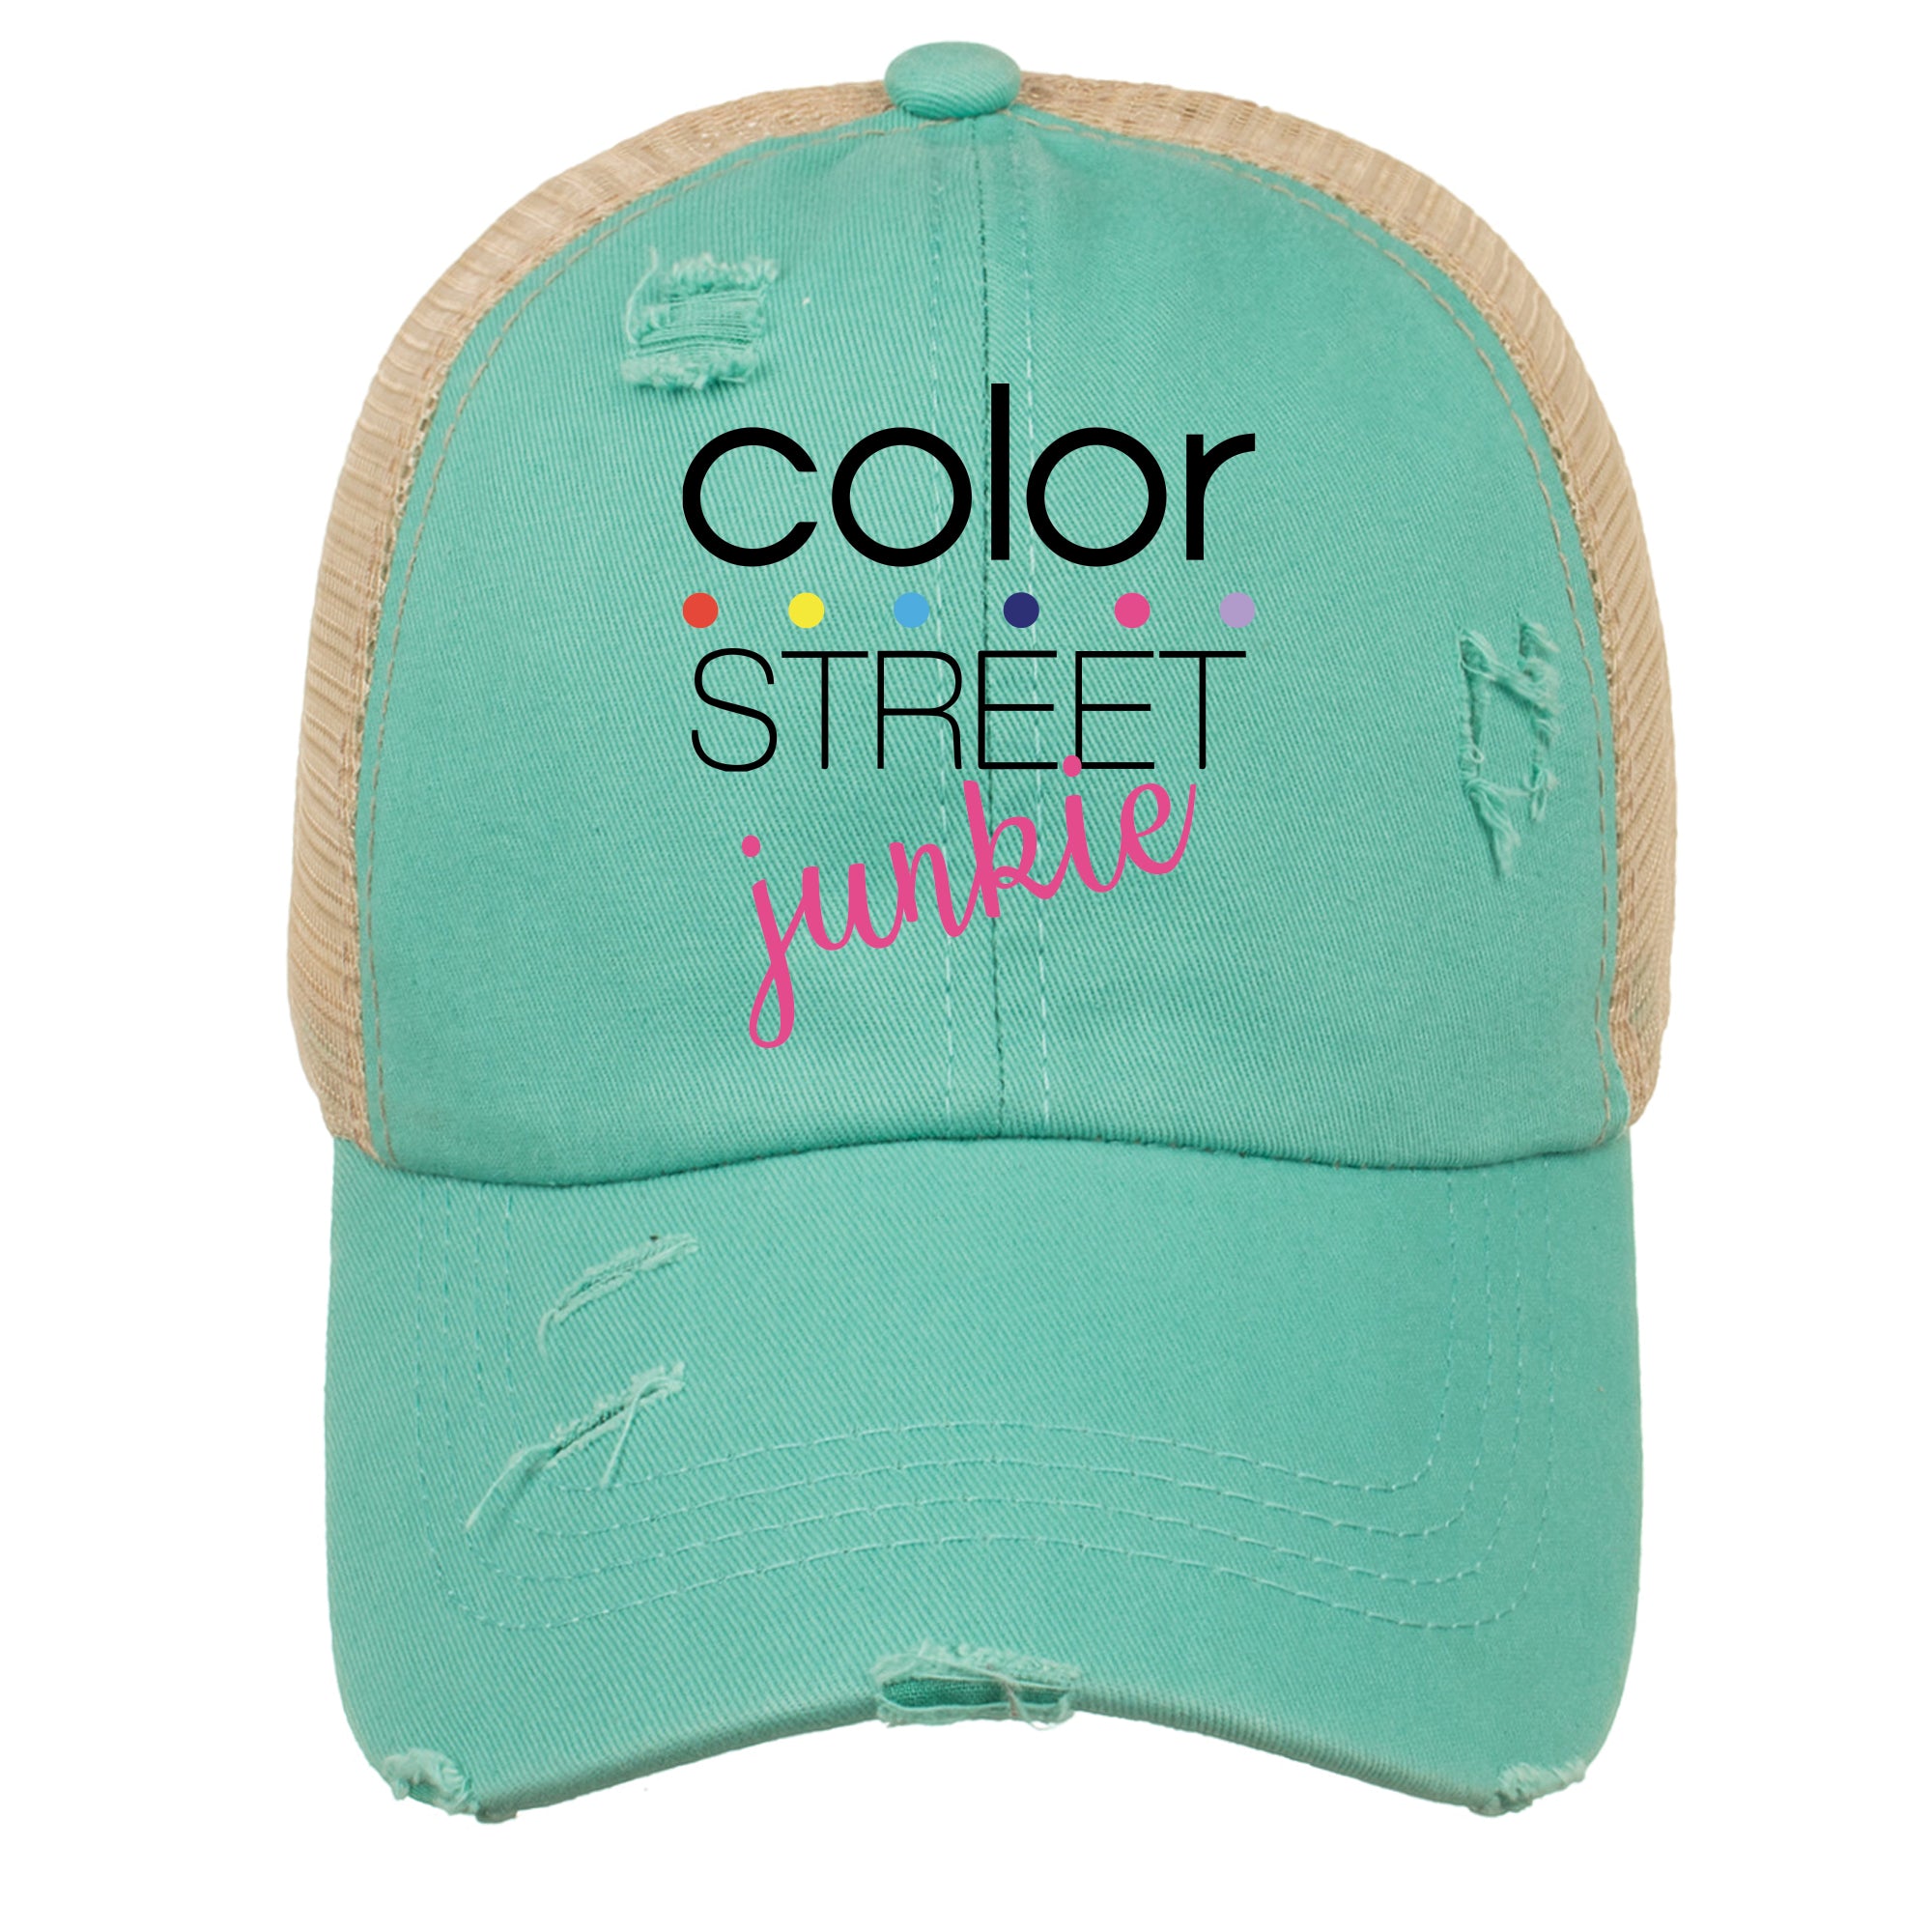 Color Street Junkie - HAT